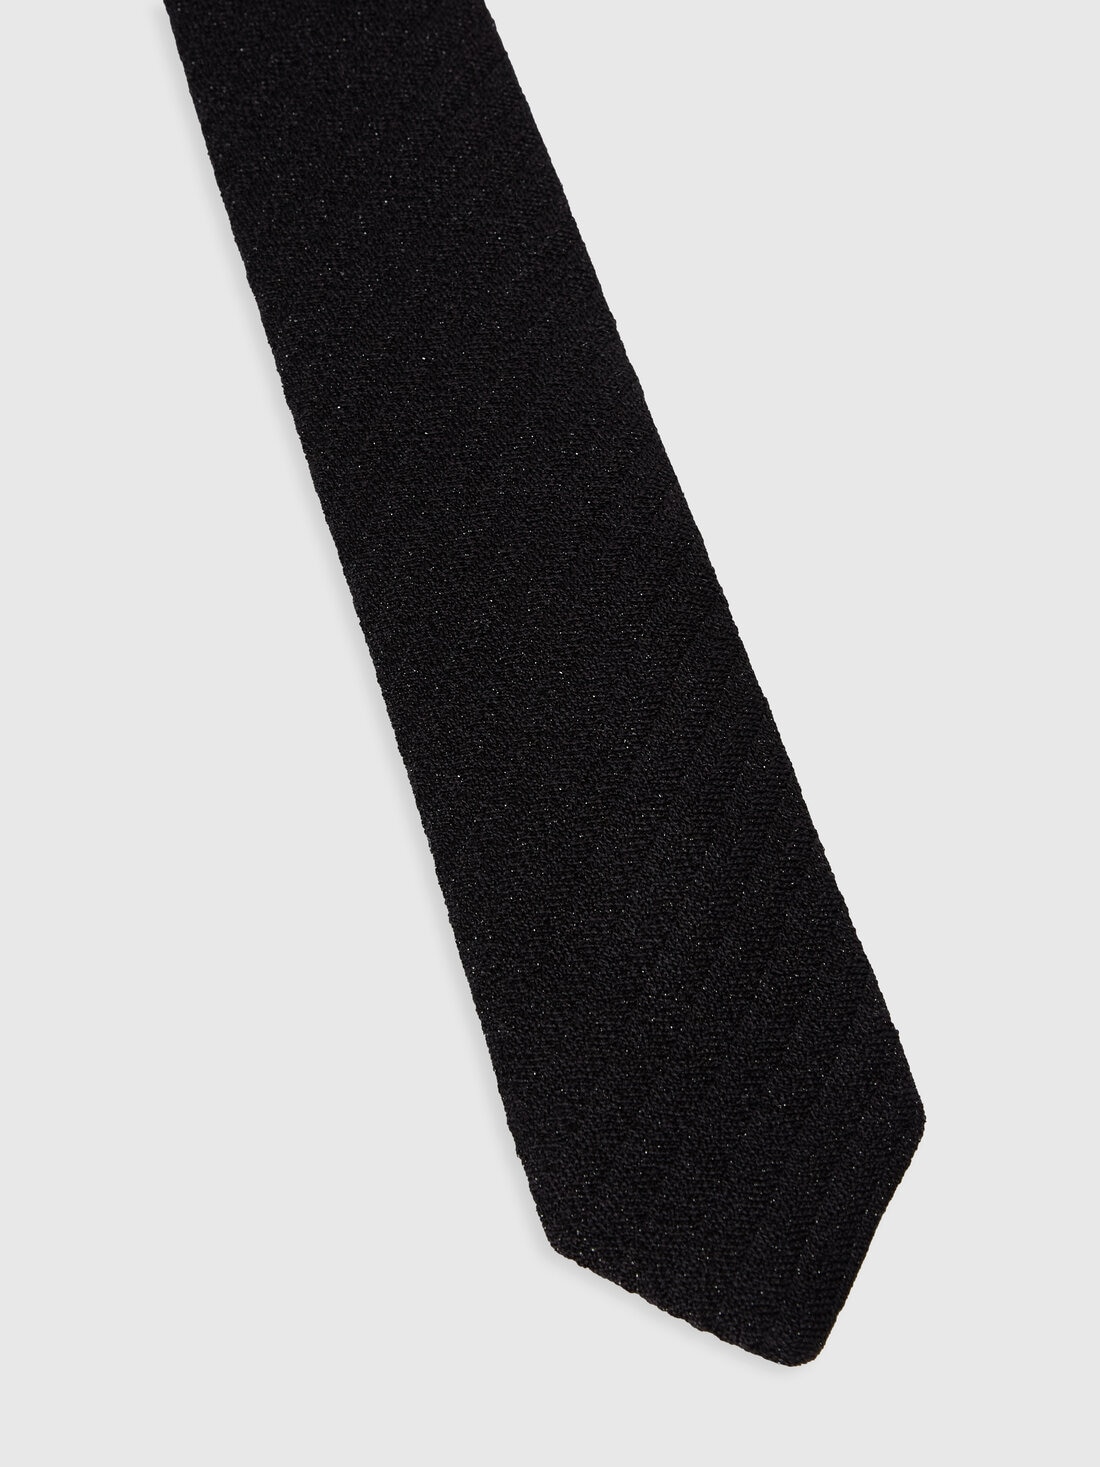 Krawatte aus Viskose-Lamé, Mehrfarbig  - 8053147141862 - 1